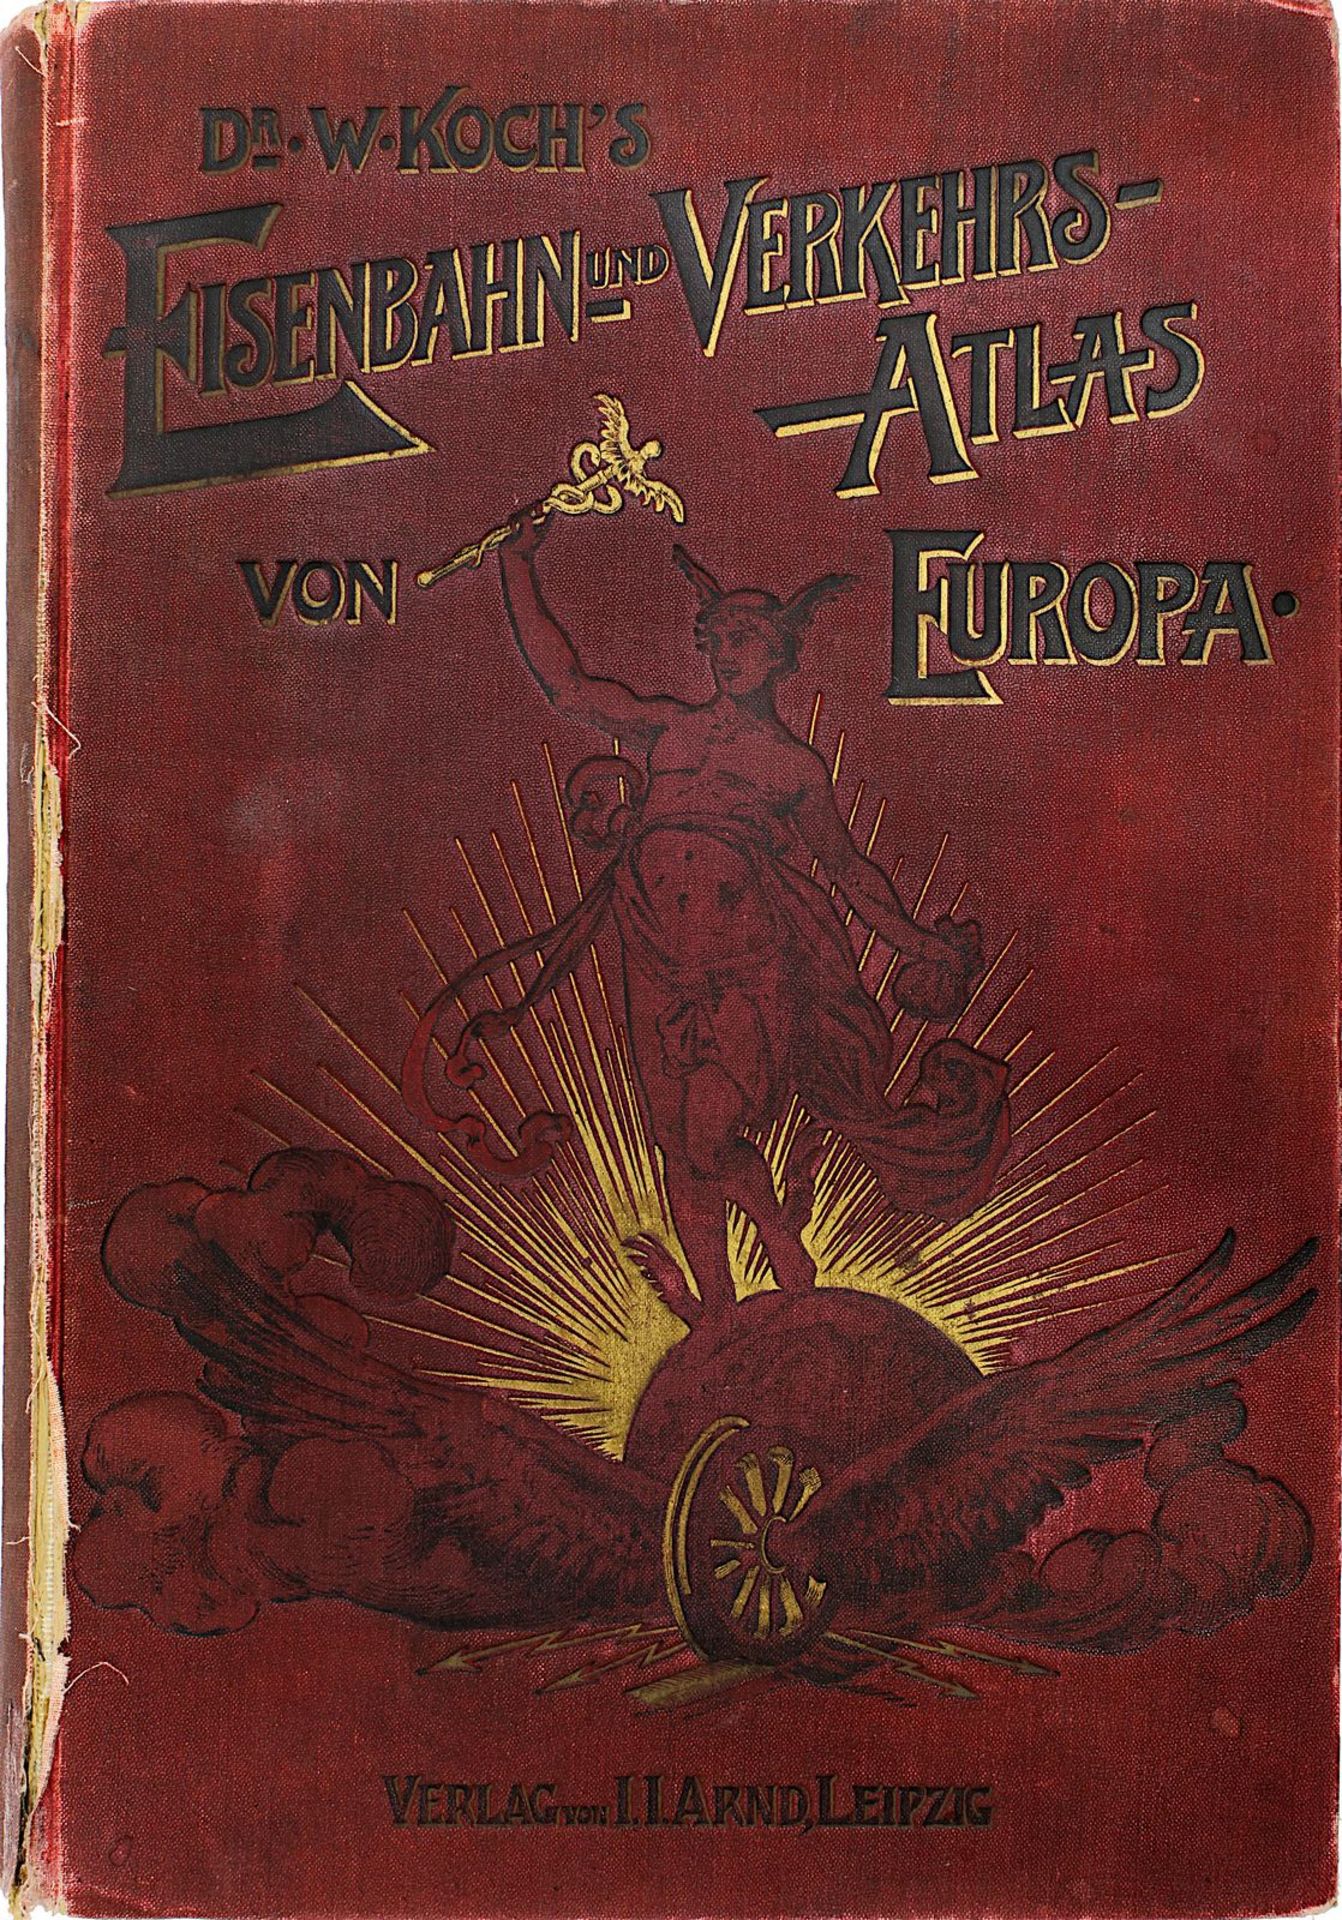 Dr. W. Kochs "Eisenbahn - und Verkehrs - Atlas von Europa", J. J. Arnd Verlag Leipzig 1905, mit